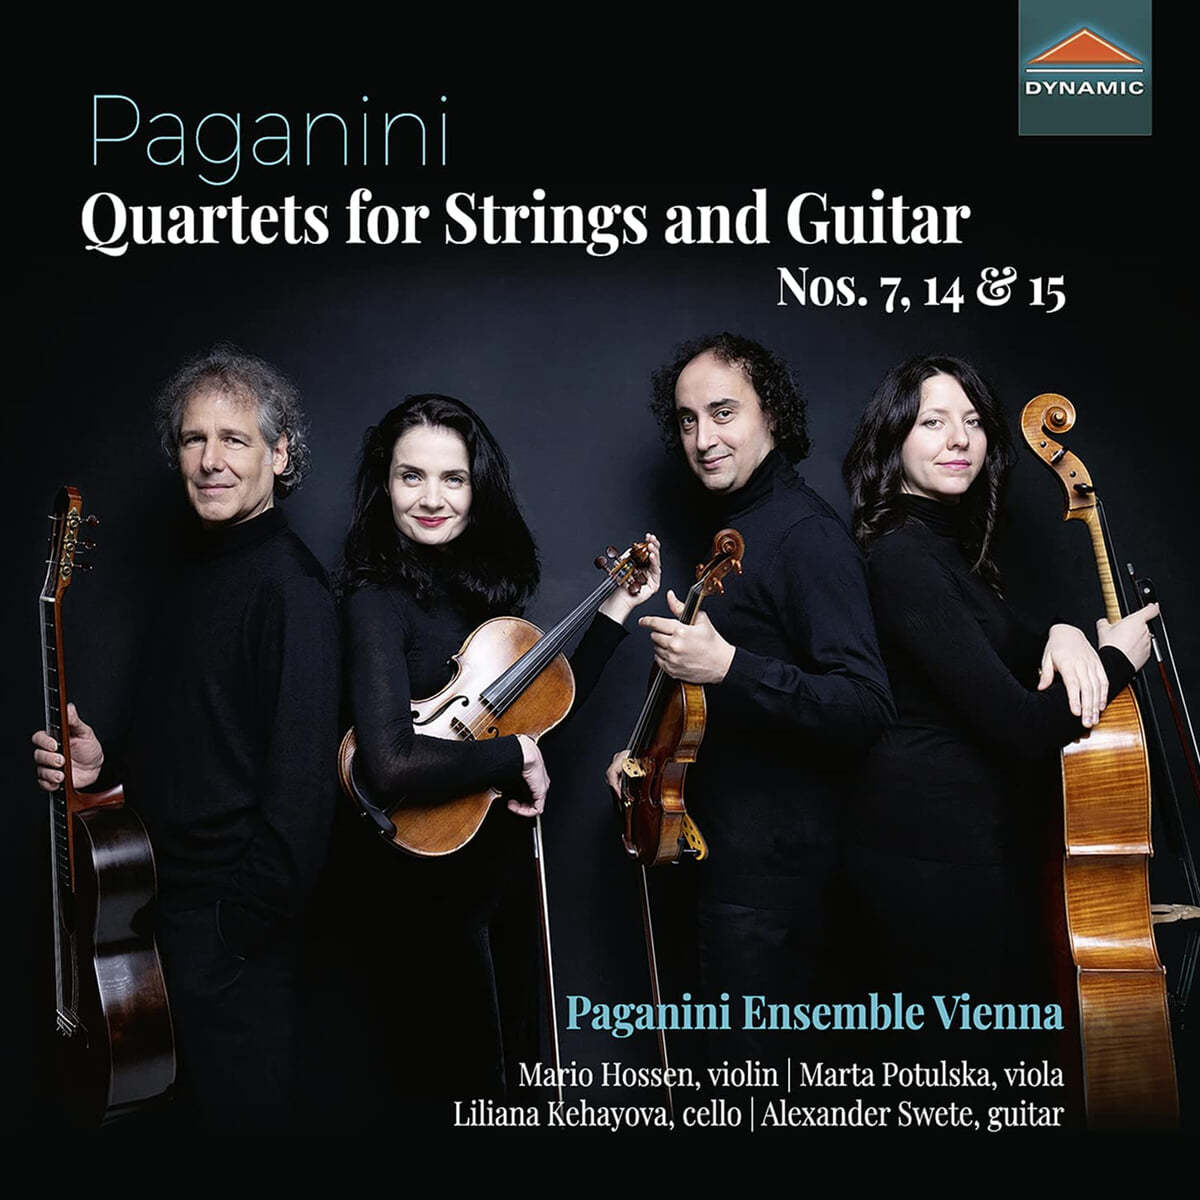 Paganini Ensemble Vienna 파가니니: 현과 기타를 위한 사중주 (Paganini: Quartets For Strings And Guitar Nos.7, 14, 15) 